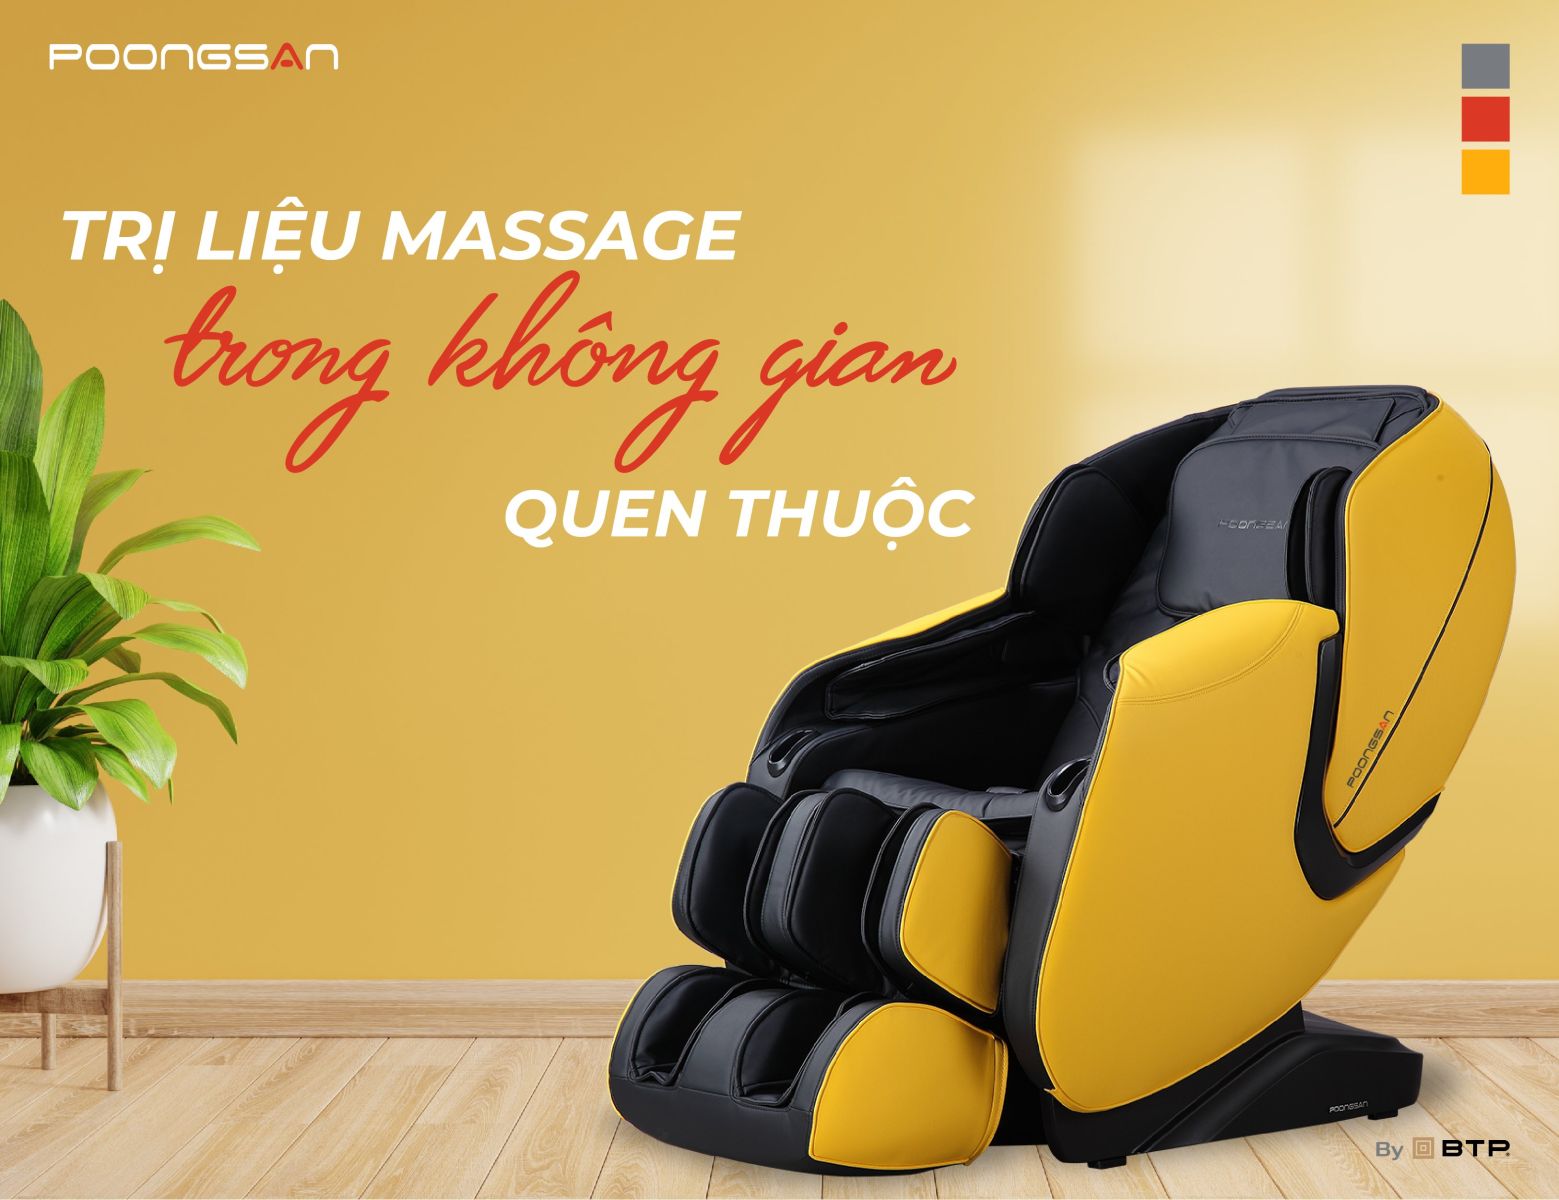 Trị liệu massage trong không gian riêng tư giúp bạn thư giãn thoải mái hơn